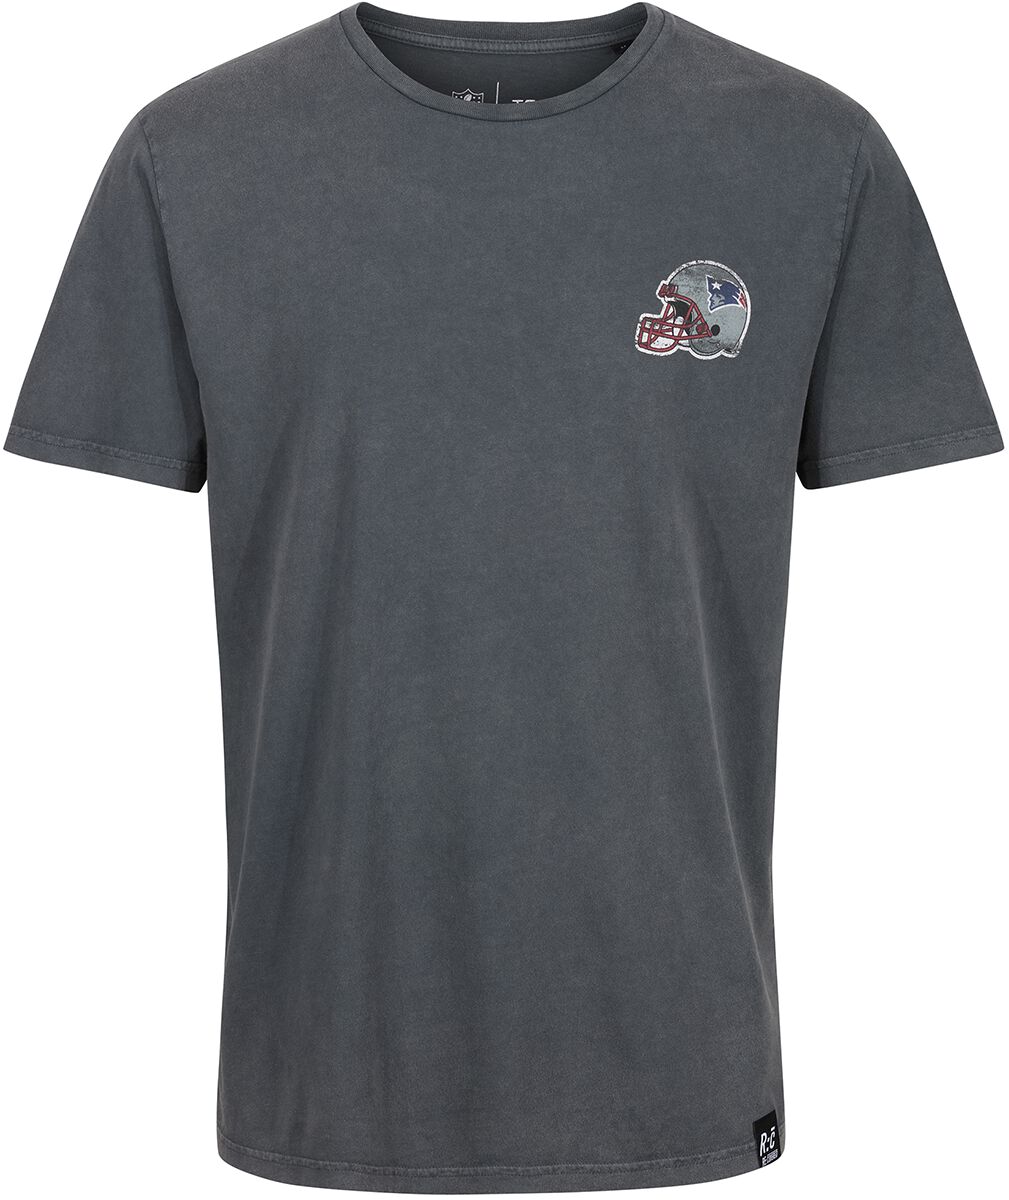 Recovered Clothing T-Shirt - NFL Patriots College Black Washed - S bis XXL - für Männer - Größe XXL - multicolor